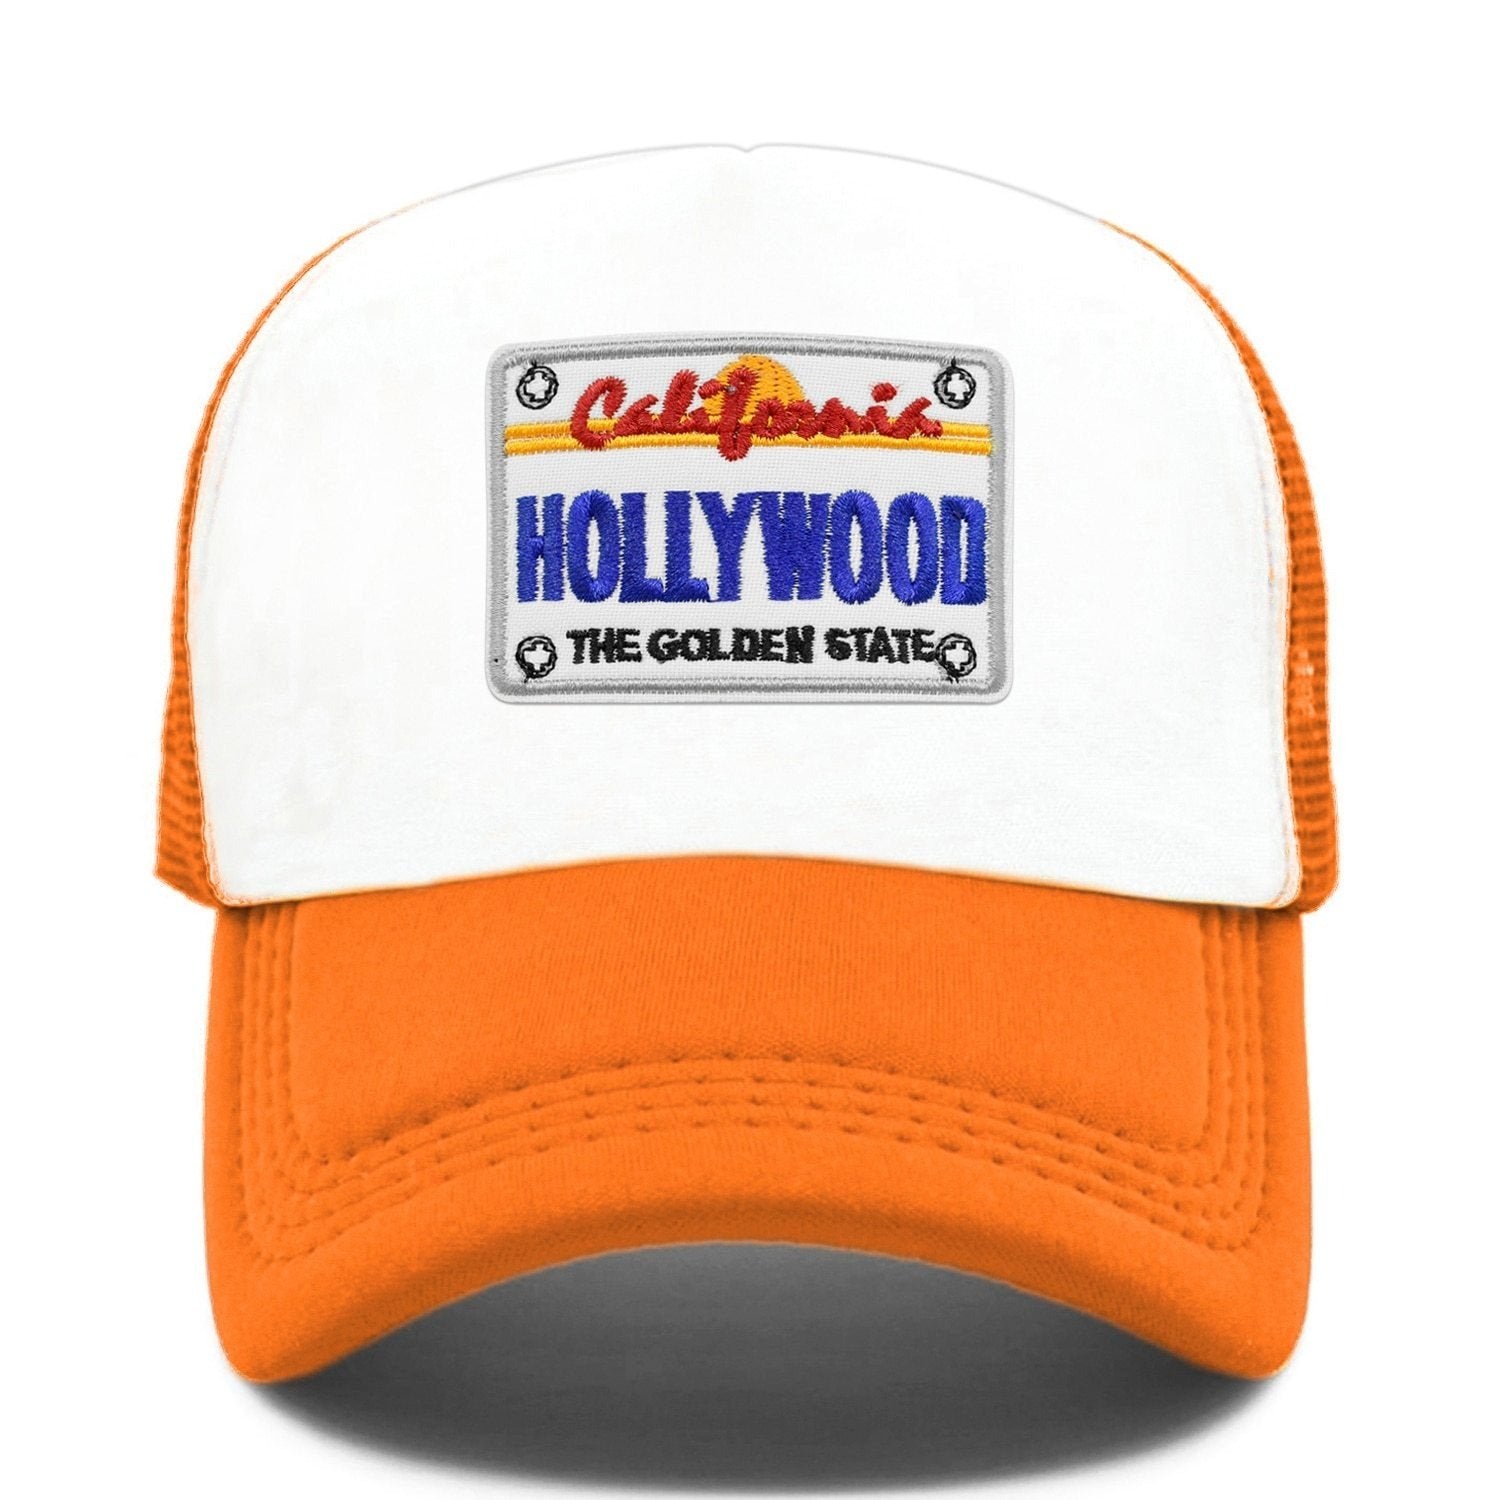 Vintage Hollywood-Kappe